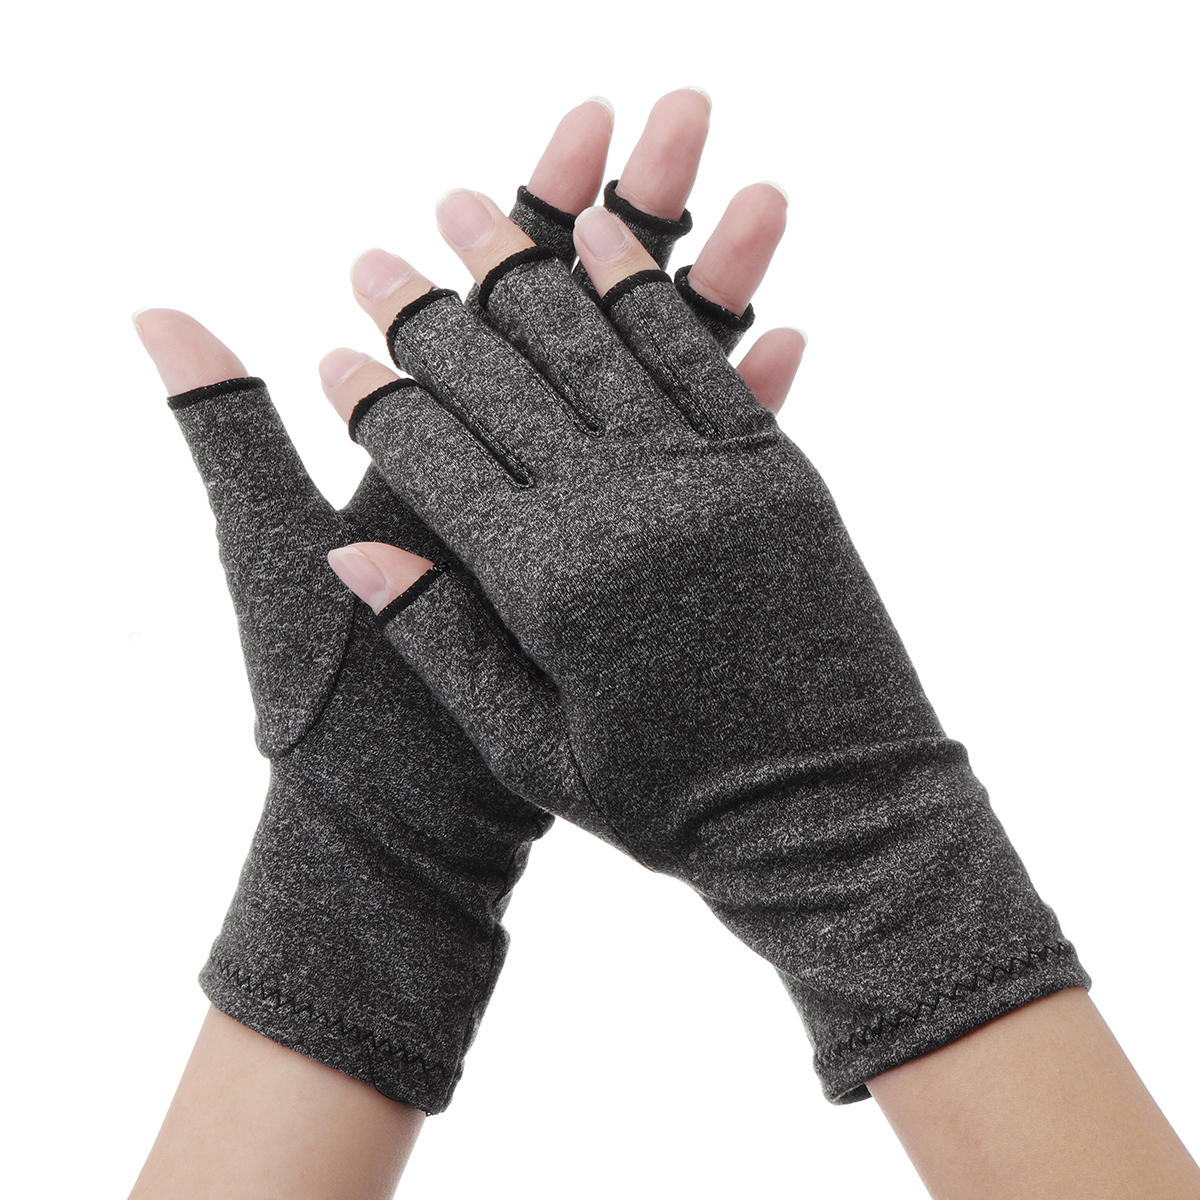 compression arthritis gloves anti arthritis hands gloves ...